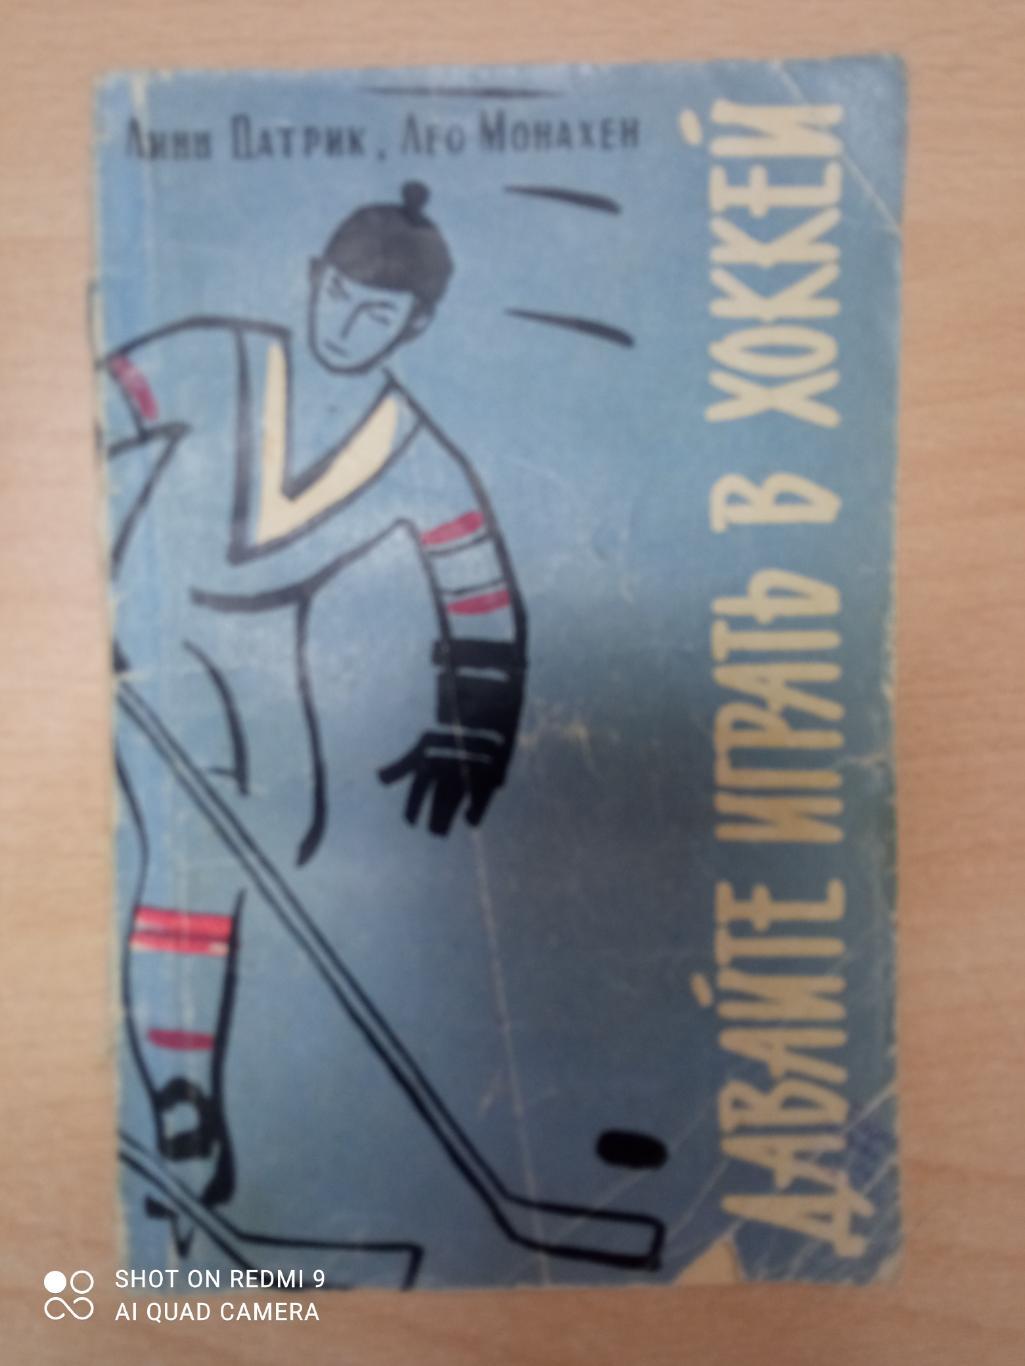 Линн Патрик, Лео Монахен. Давайте играть в хоккей. ФиС, 1961. 100 стр.